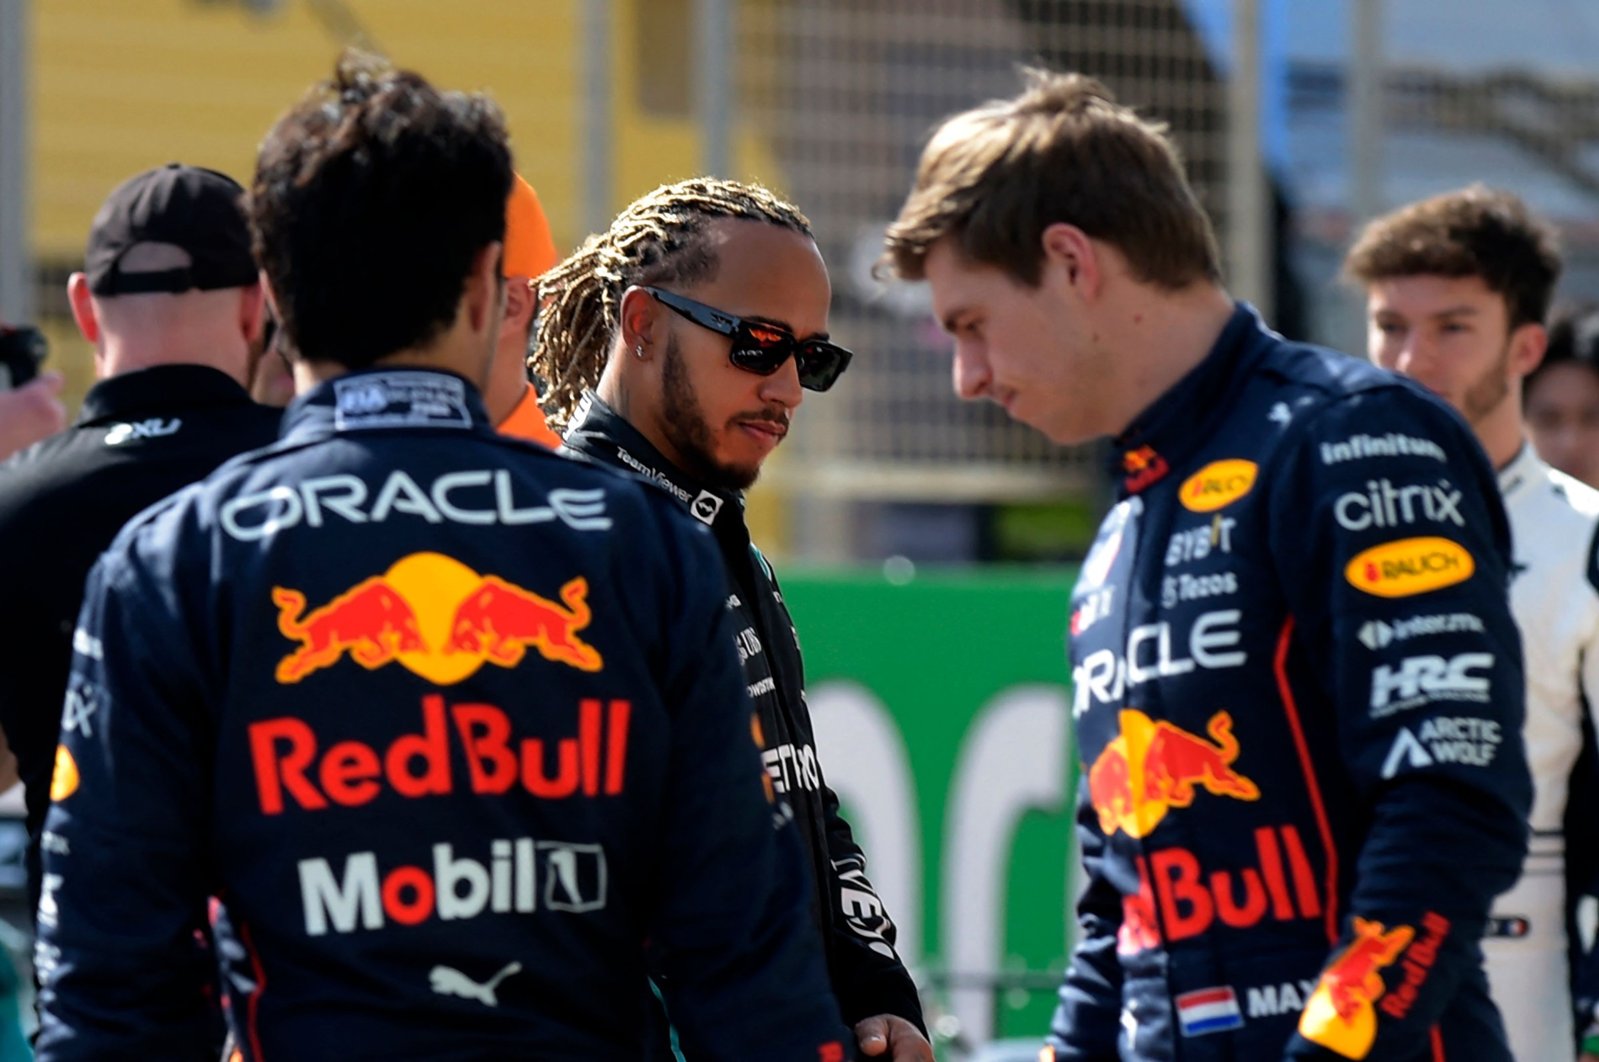 Persaingan Hamilton-Verstappen, drama kembali saat era baru dimulai di F1